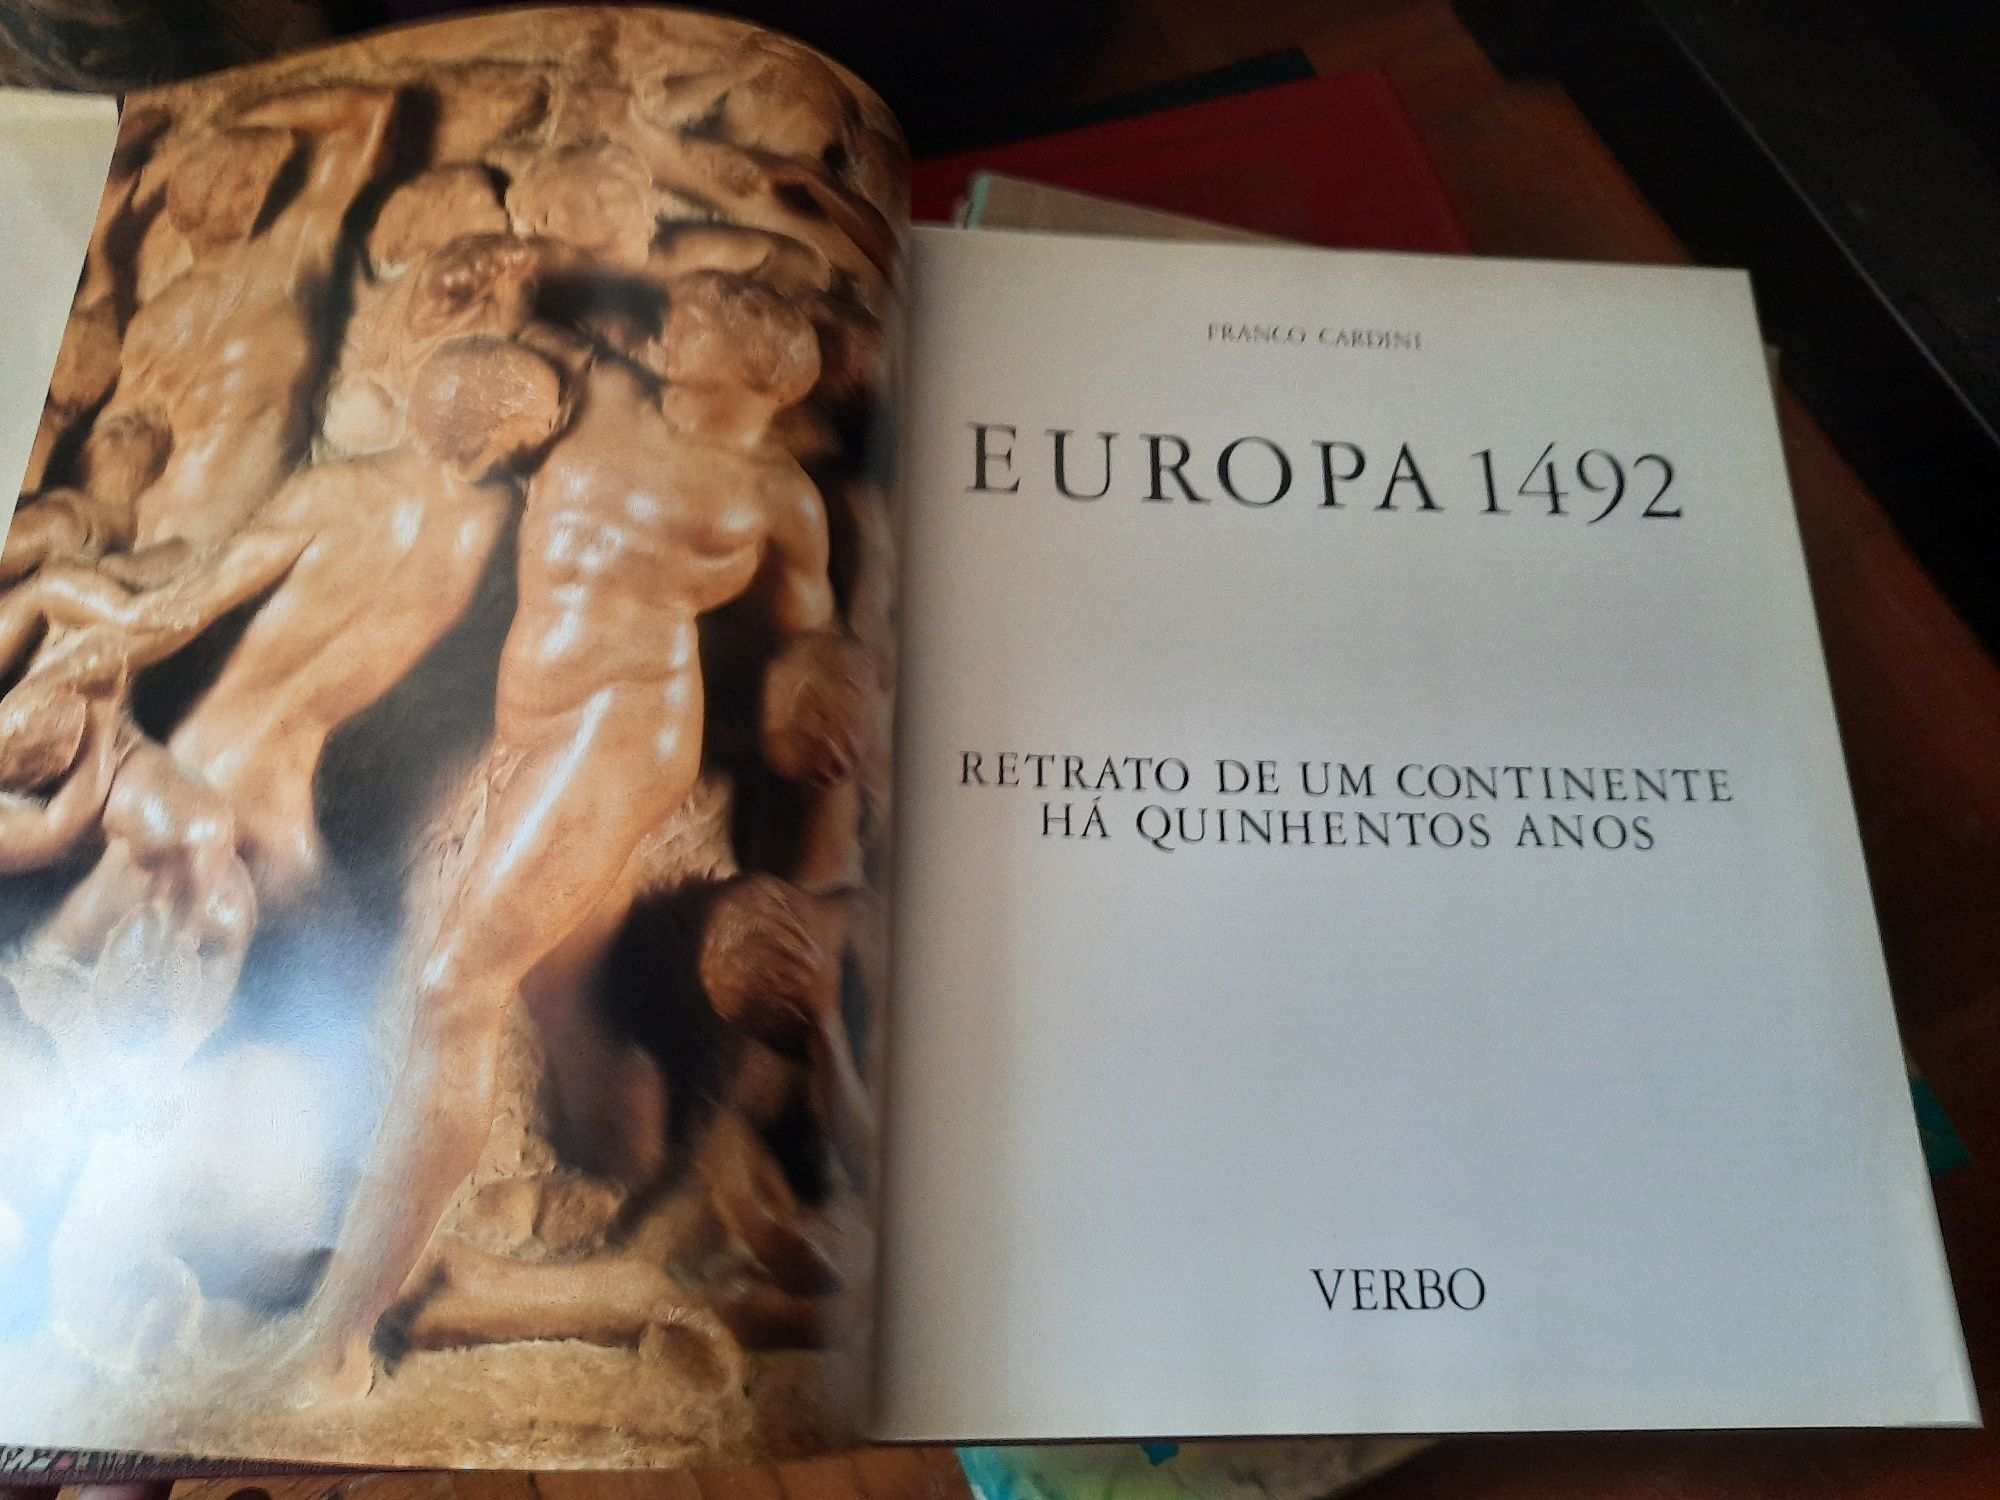 Europa 1493 Franco cardini